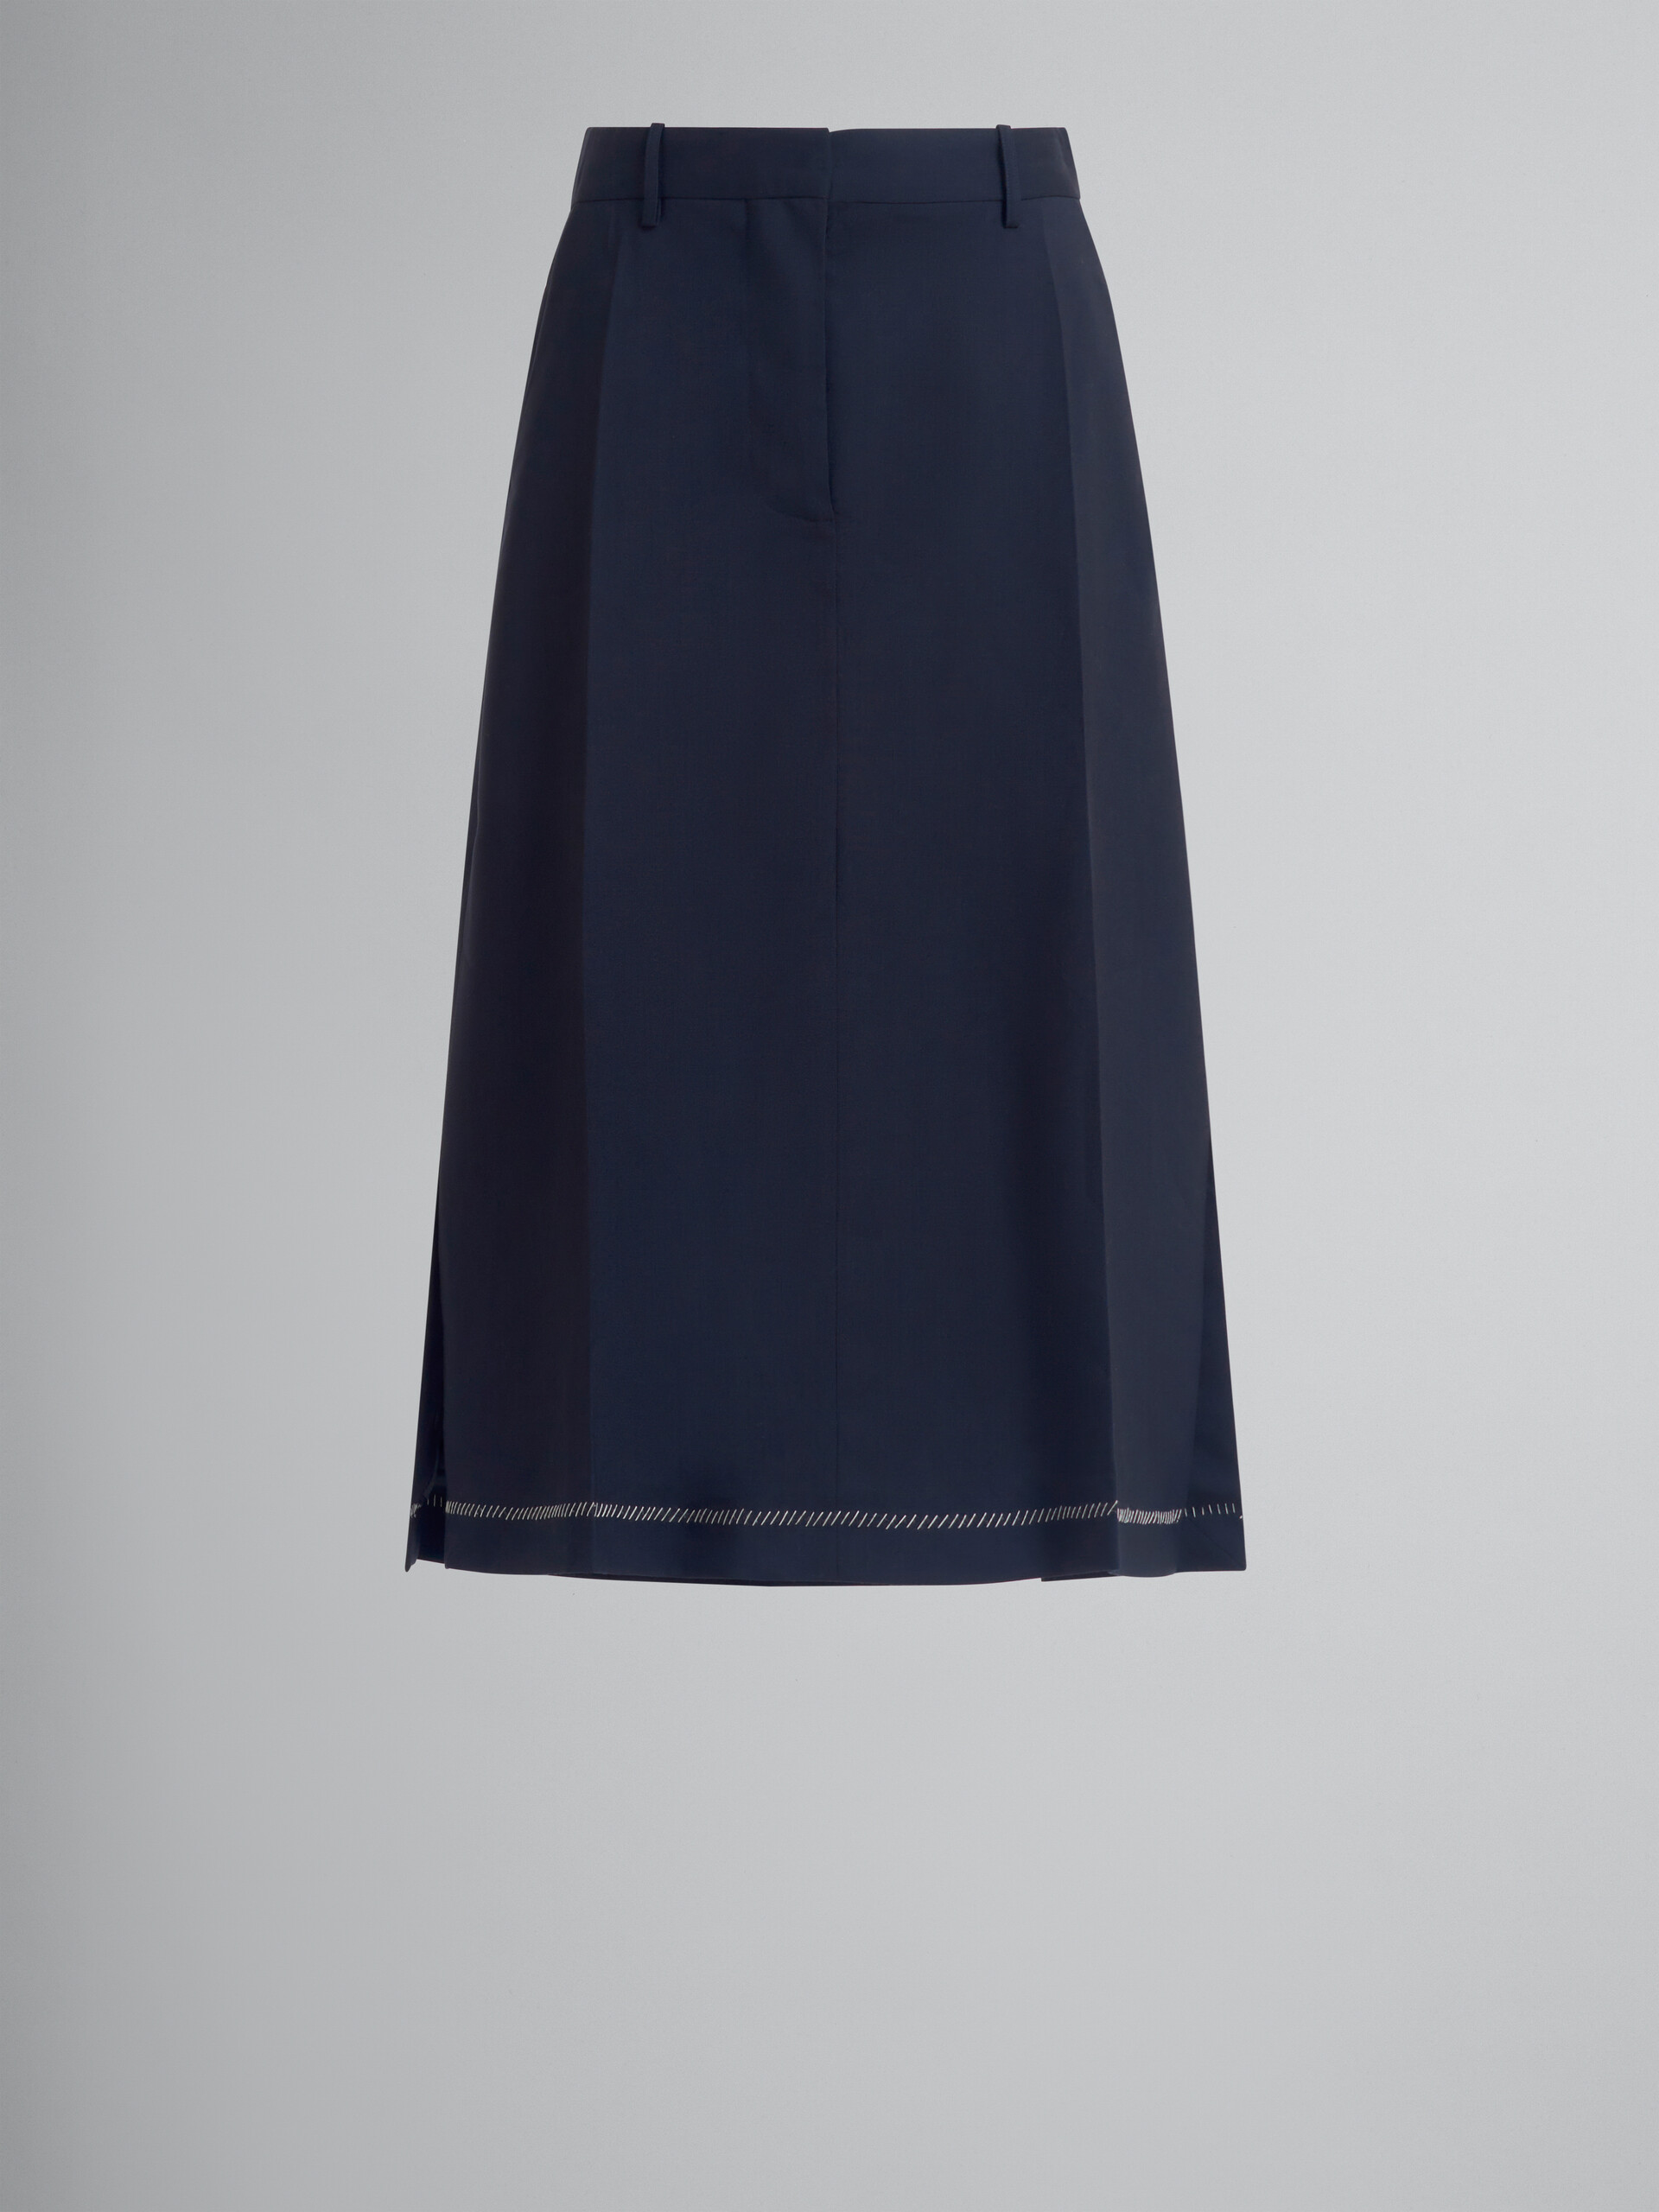 ディープブルー ウール製 ミディ丈スカート、プレスプリーツ - スカート - Image 1